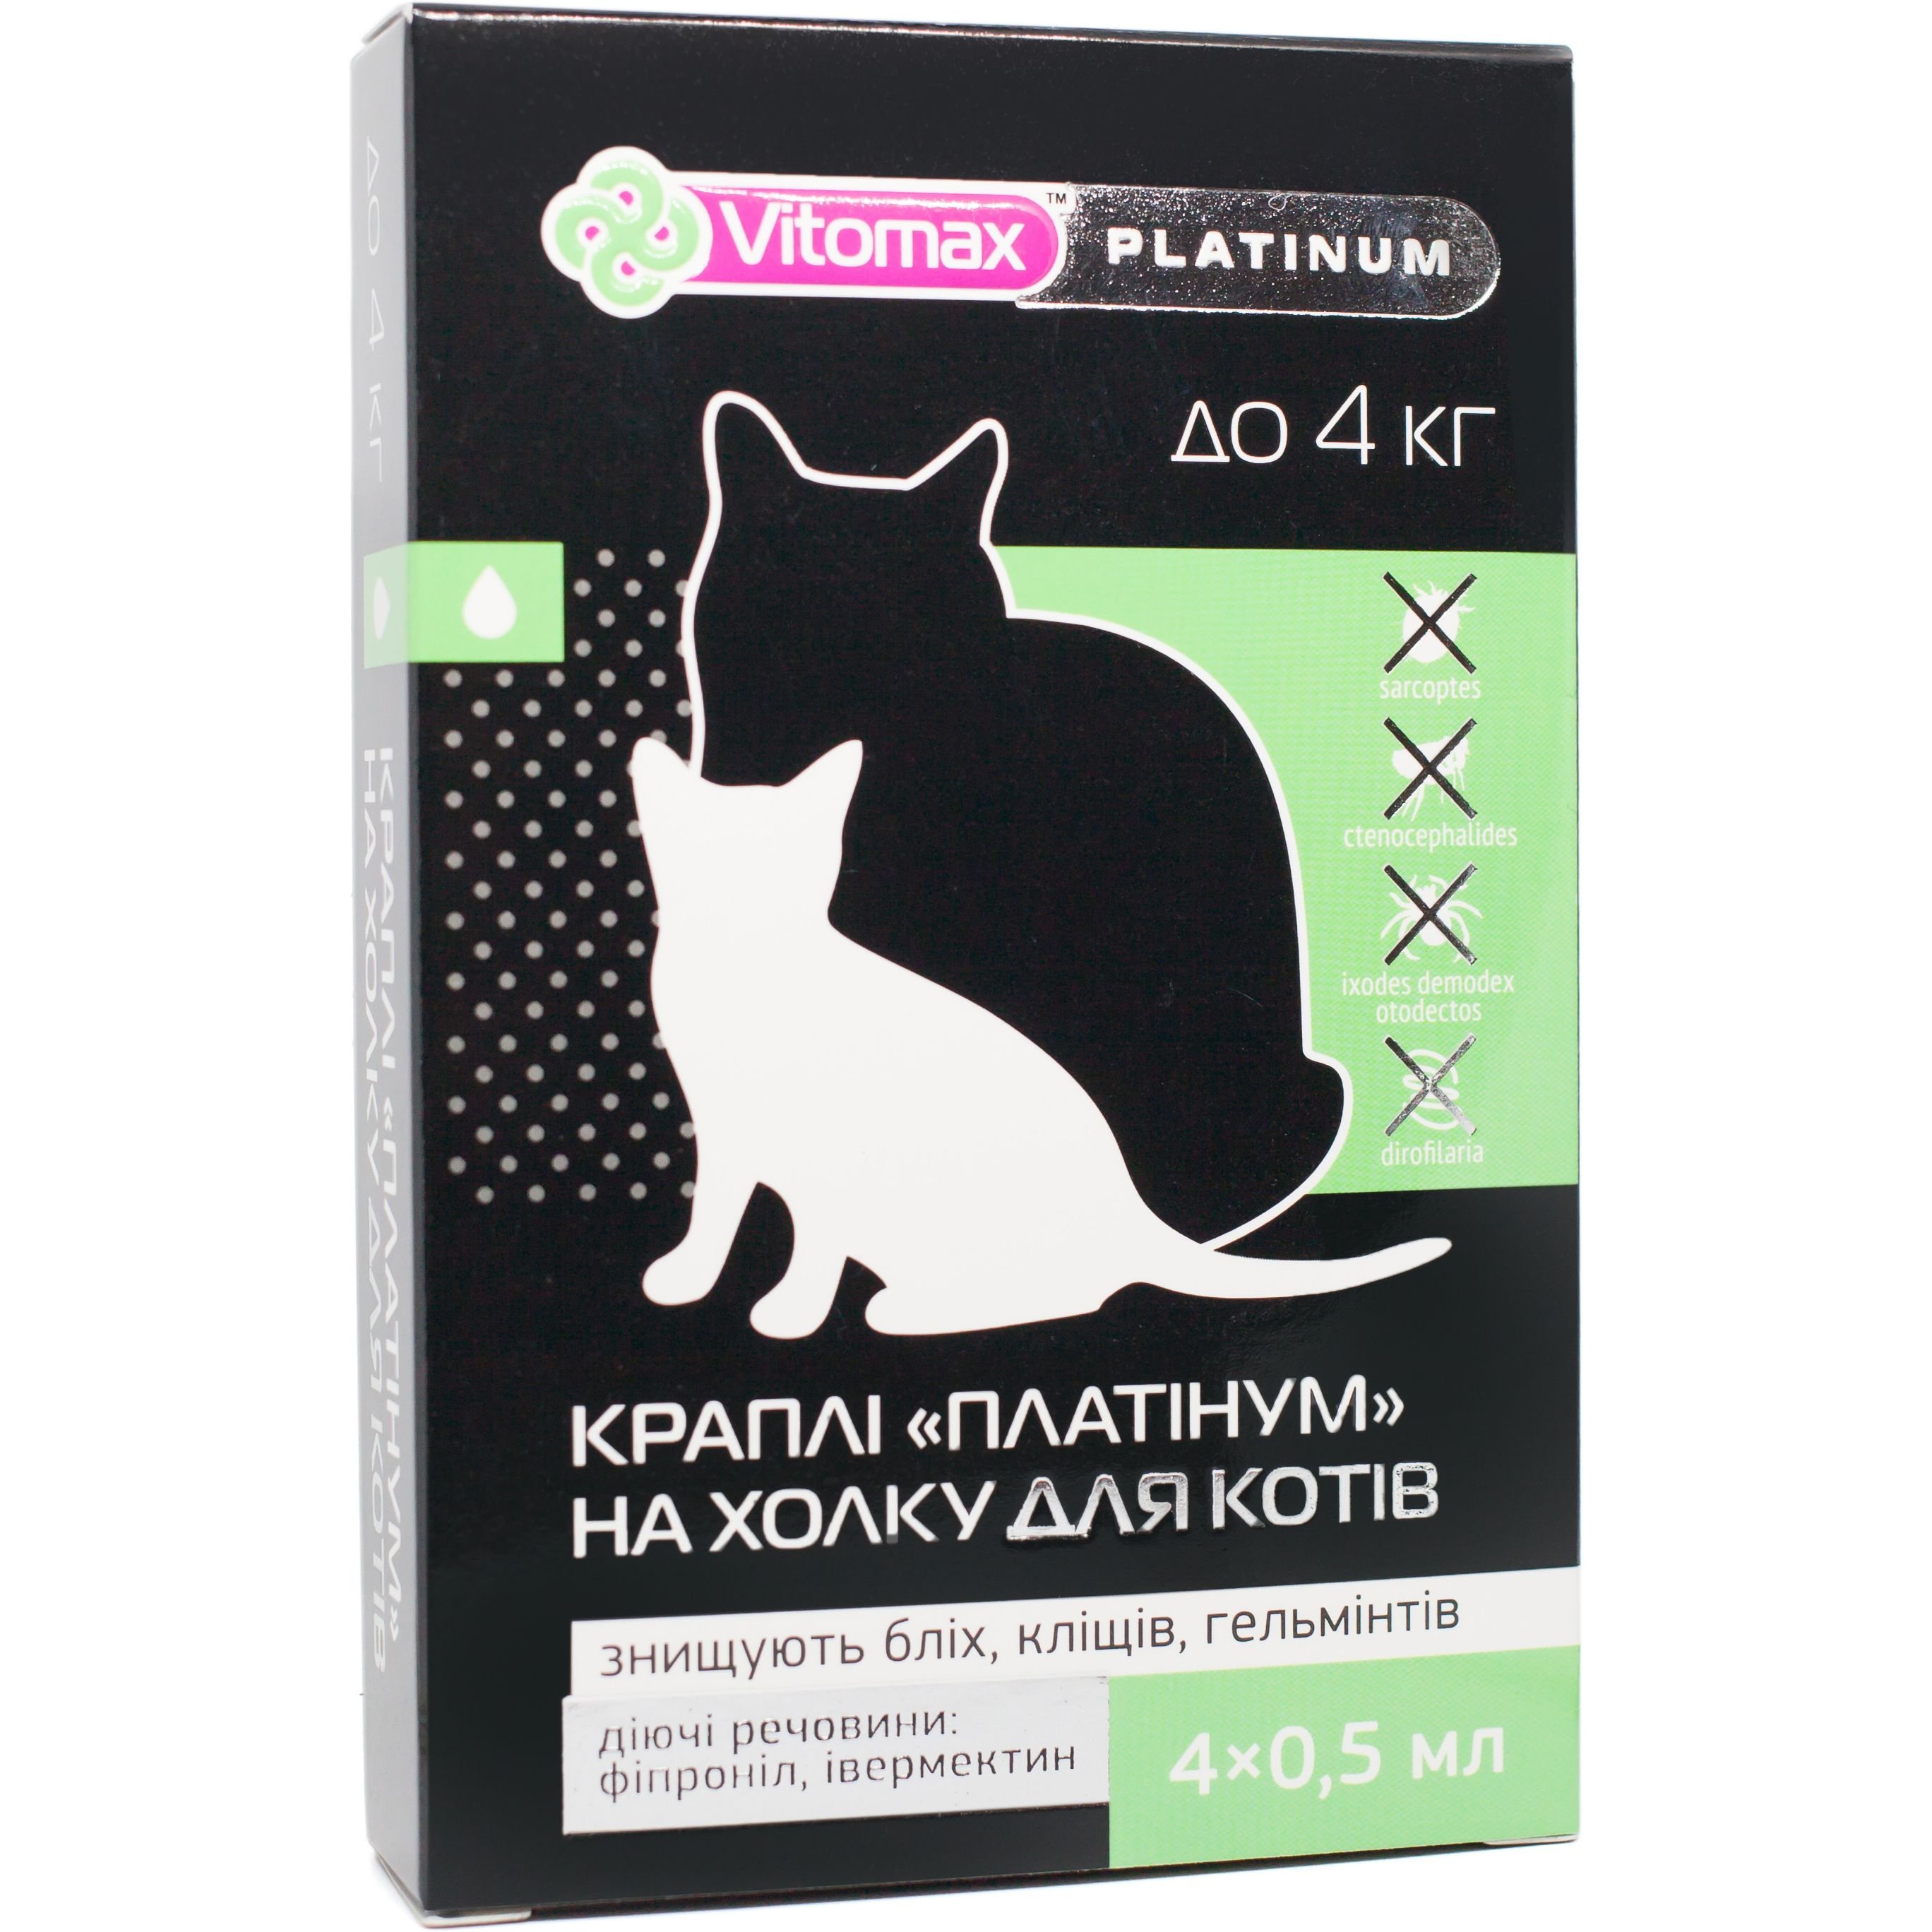 Капли на холку Vitomax Platinum против блох, клещей и гельминтов для собак до 4 кг, 0.5 мл (4 пипетки) - фото 1